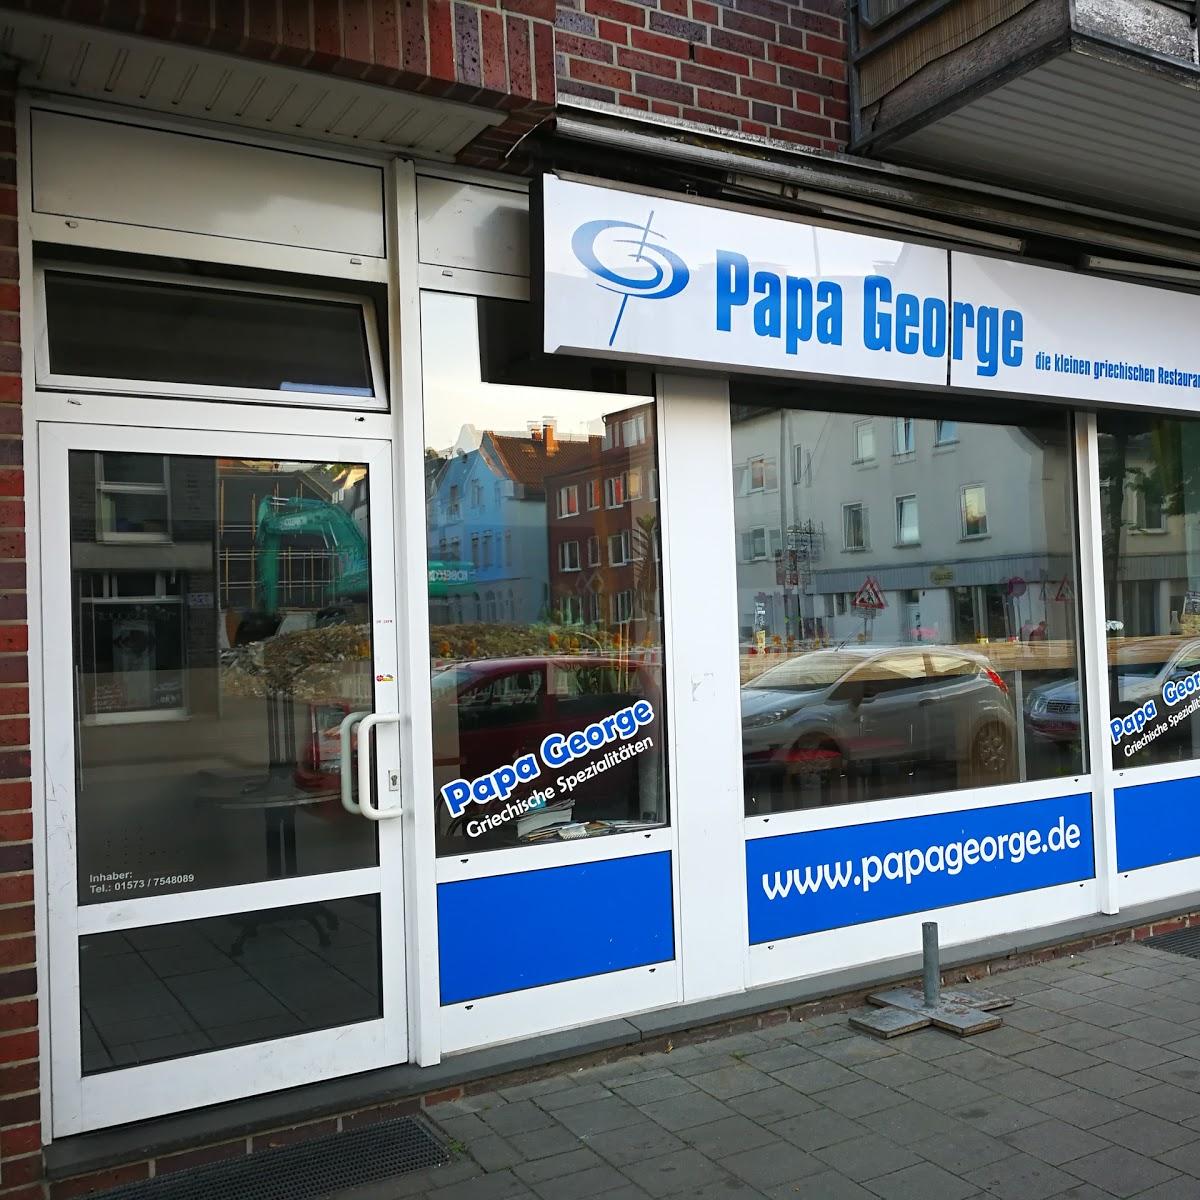 Restaurant "Papa George Gastro GmbH Pizzeria" in Münster